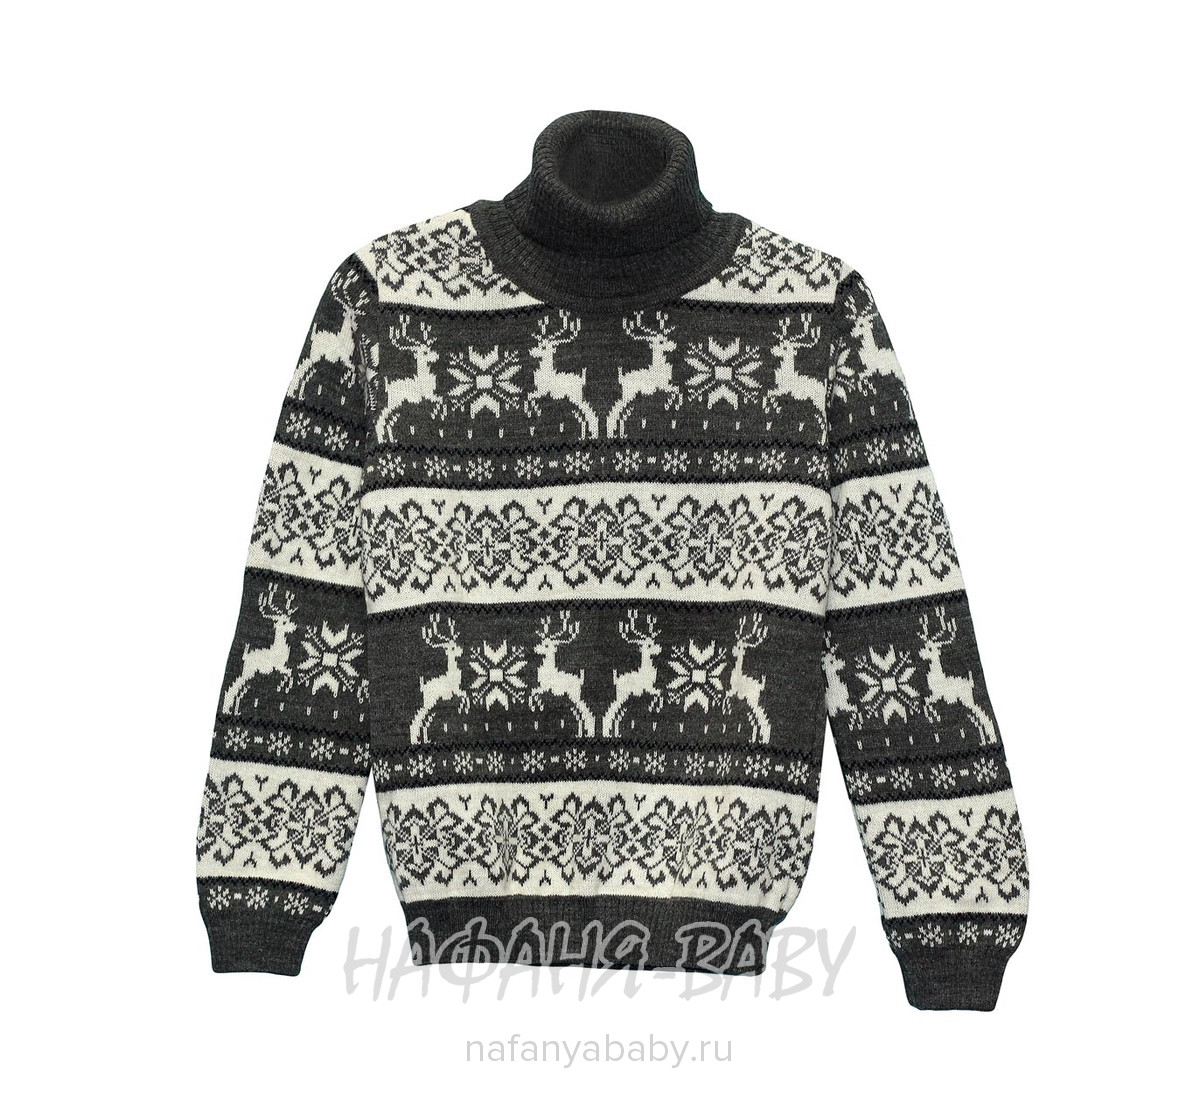 Вязанный теплый свитер CILIVILI арт: 508, 10-15 лет, 5-9 лет, оптом Турция